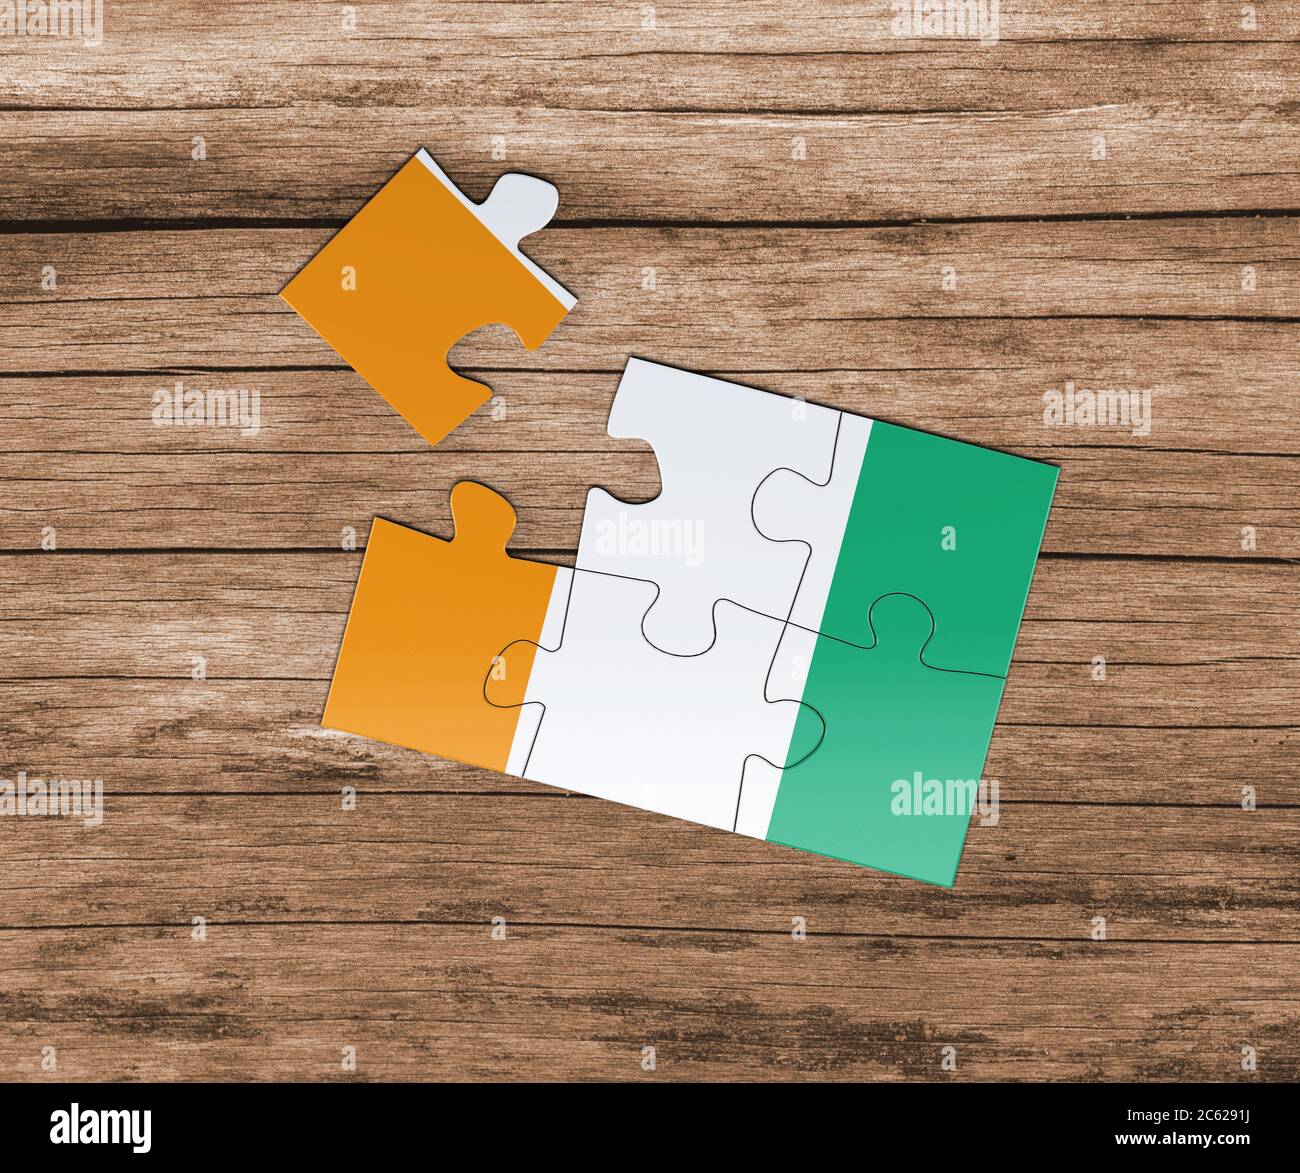 Cote D'Ivoire Nationalflagge auf Puzzle. Ein Stück fehlt. Gefahrenkonzept. Stockfoto